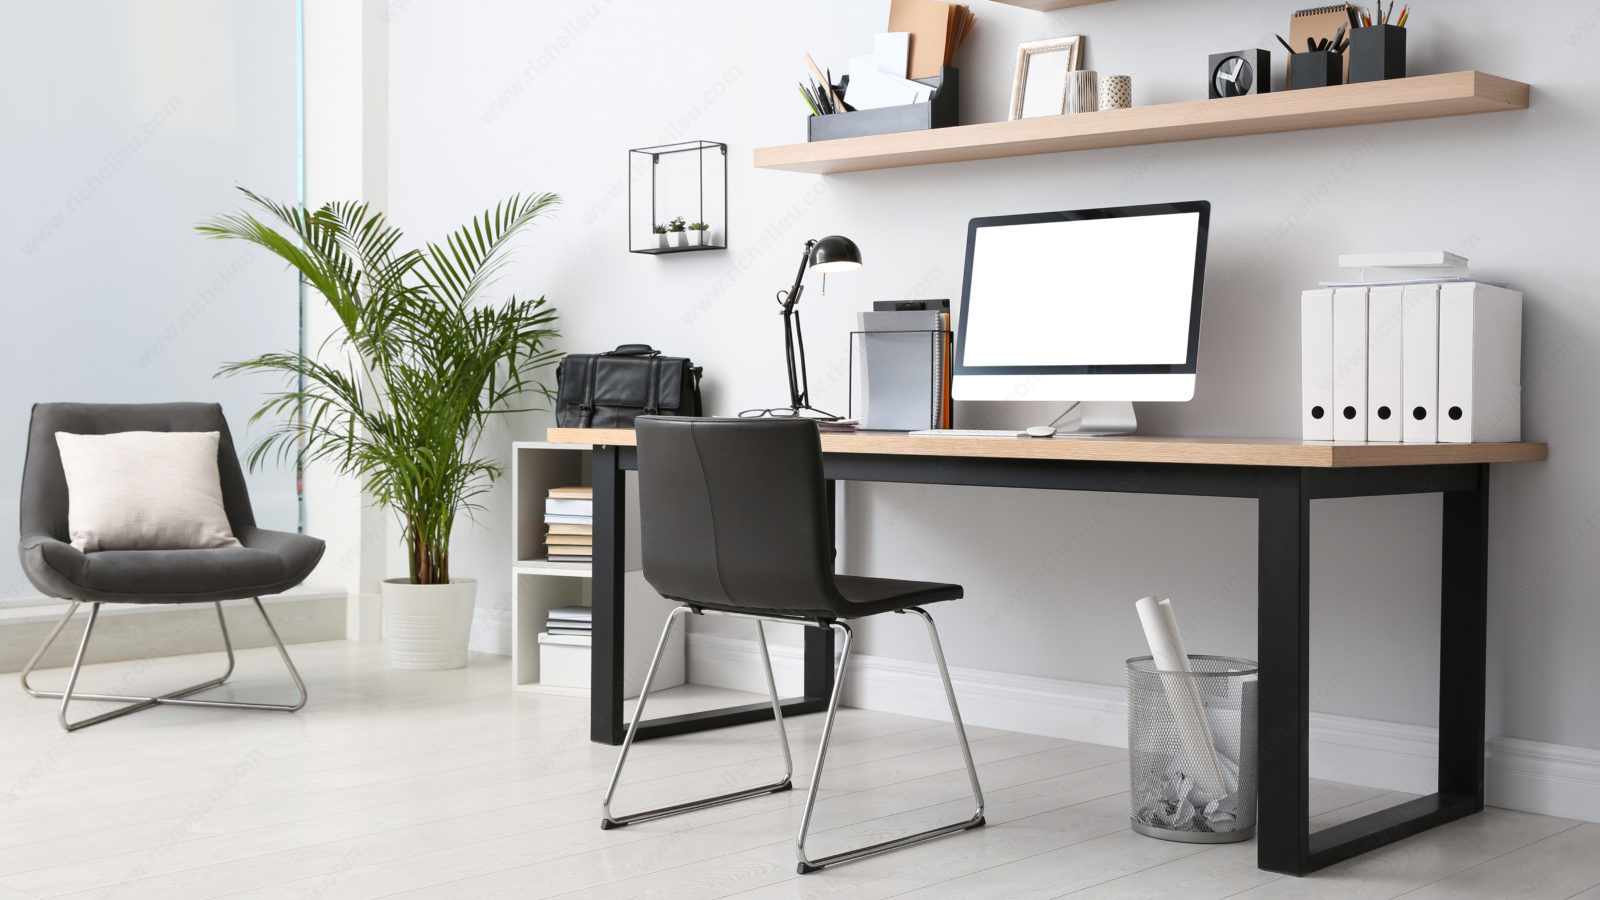 Douze éléments essentiels pour concevoir le meilleur espace de travail à la maison possible